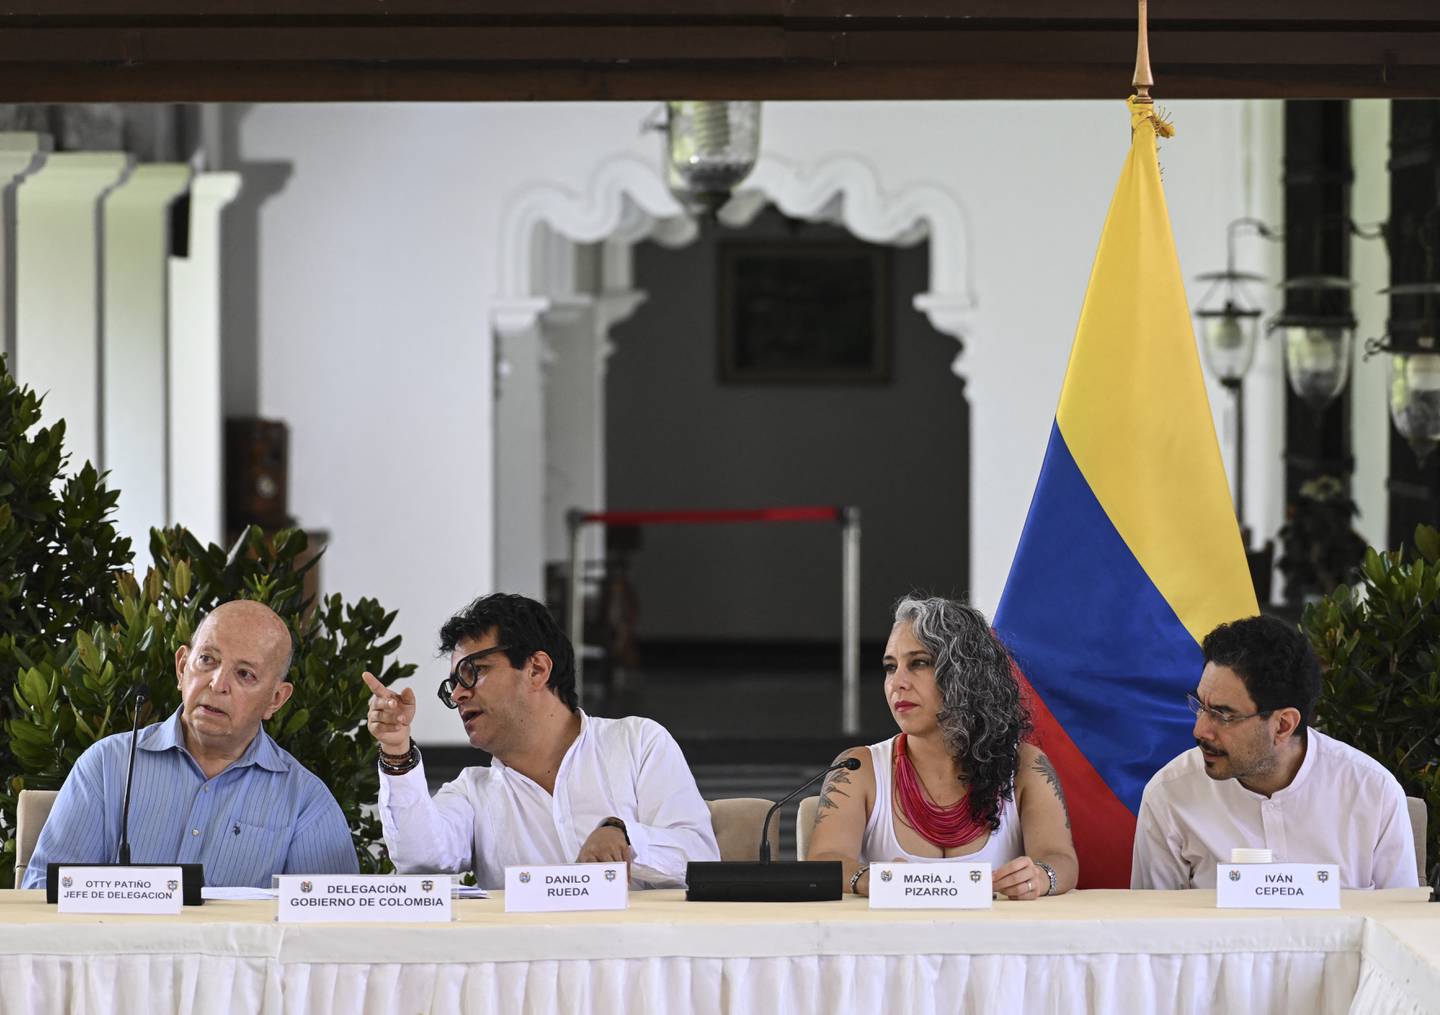 (De izq a der) Los delegados del gobierno colombiano, Otty Patiño, Danilo Rueda, María Pizarro e Iván Cepeda, hablan mientras participan en un evento en el marco de las conversaciones de paz con el último grupo guerrillero activo de Colombia, el Ejército de Liberación Nacional ( ELN).